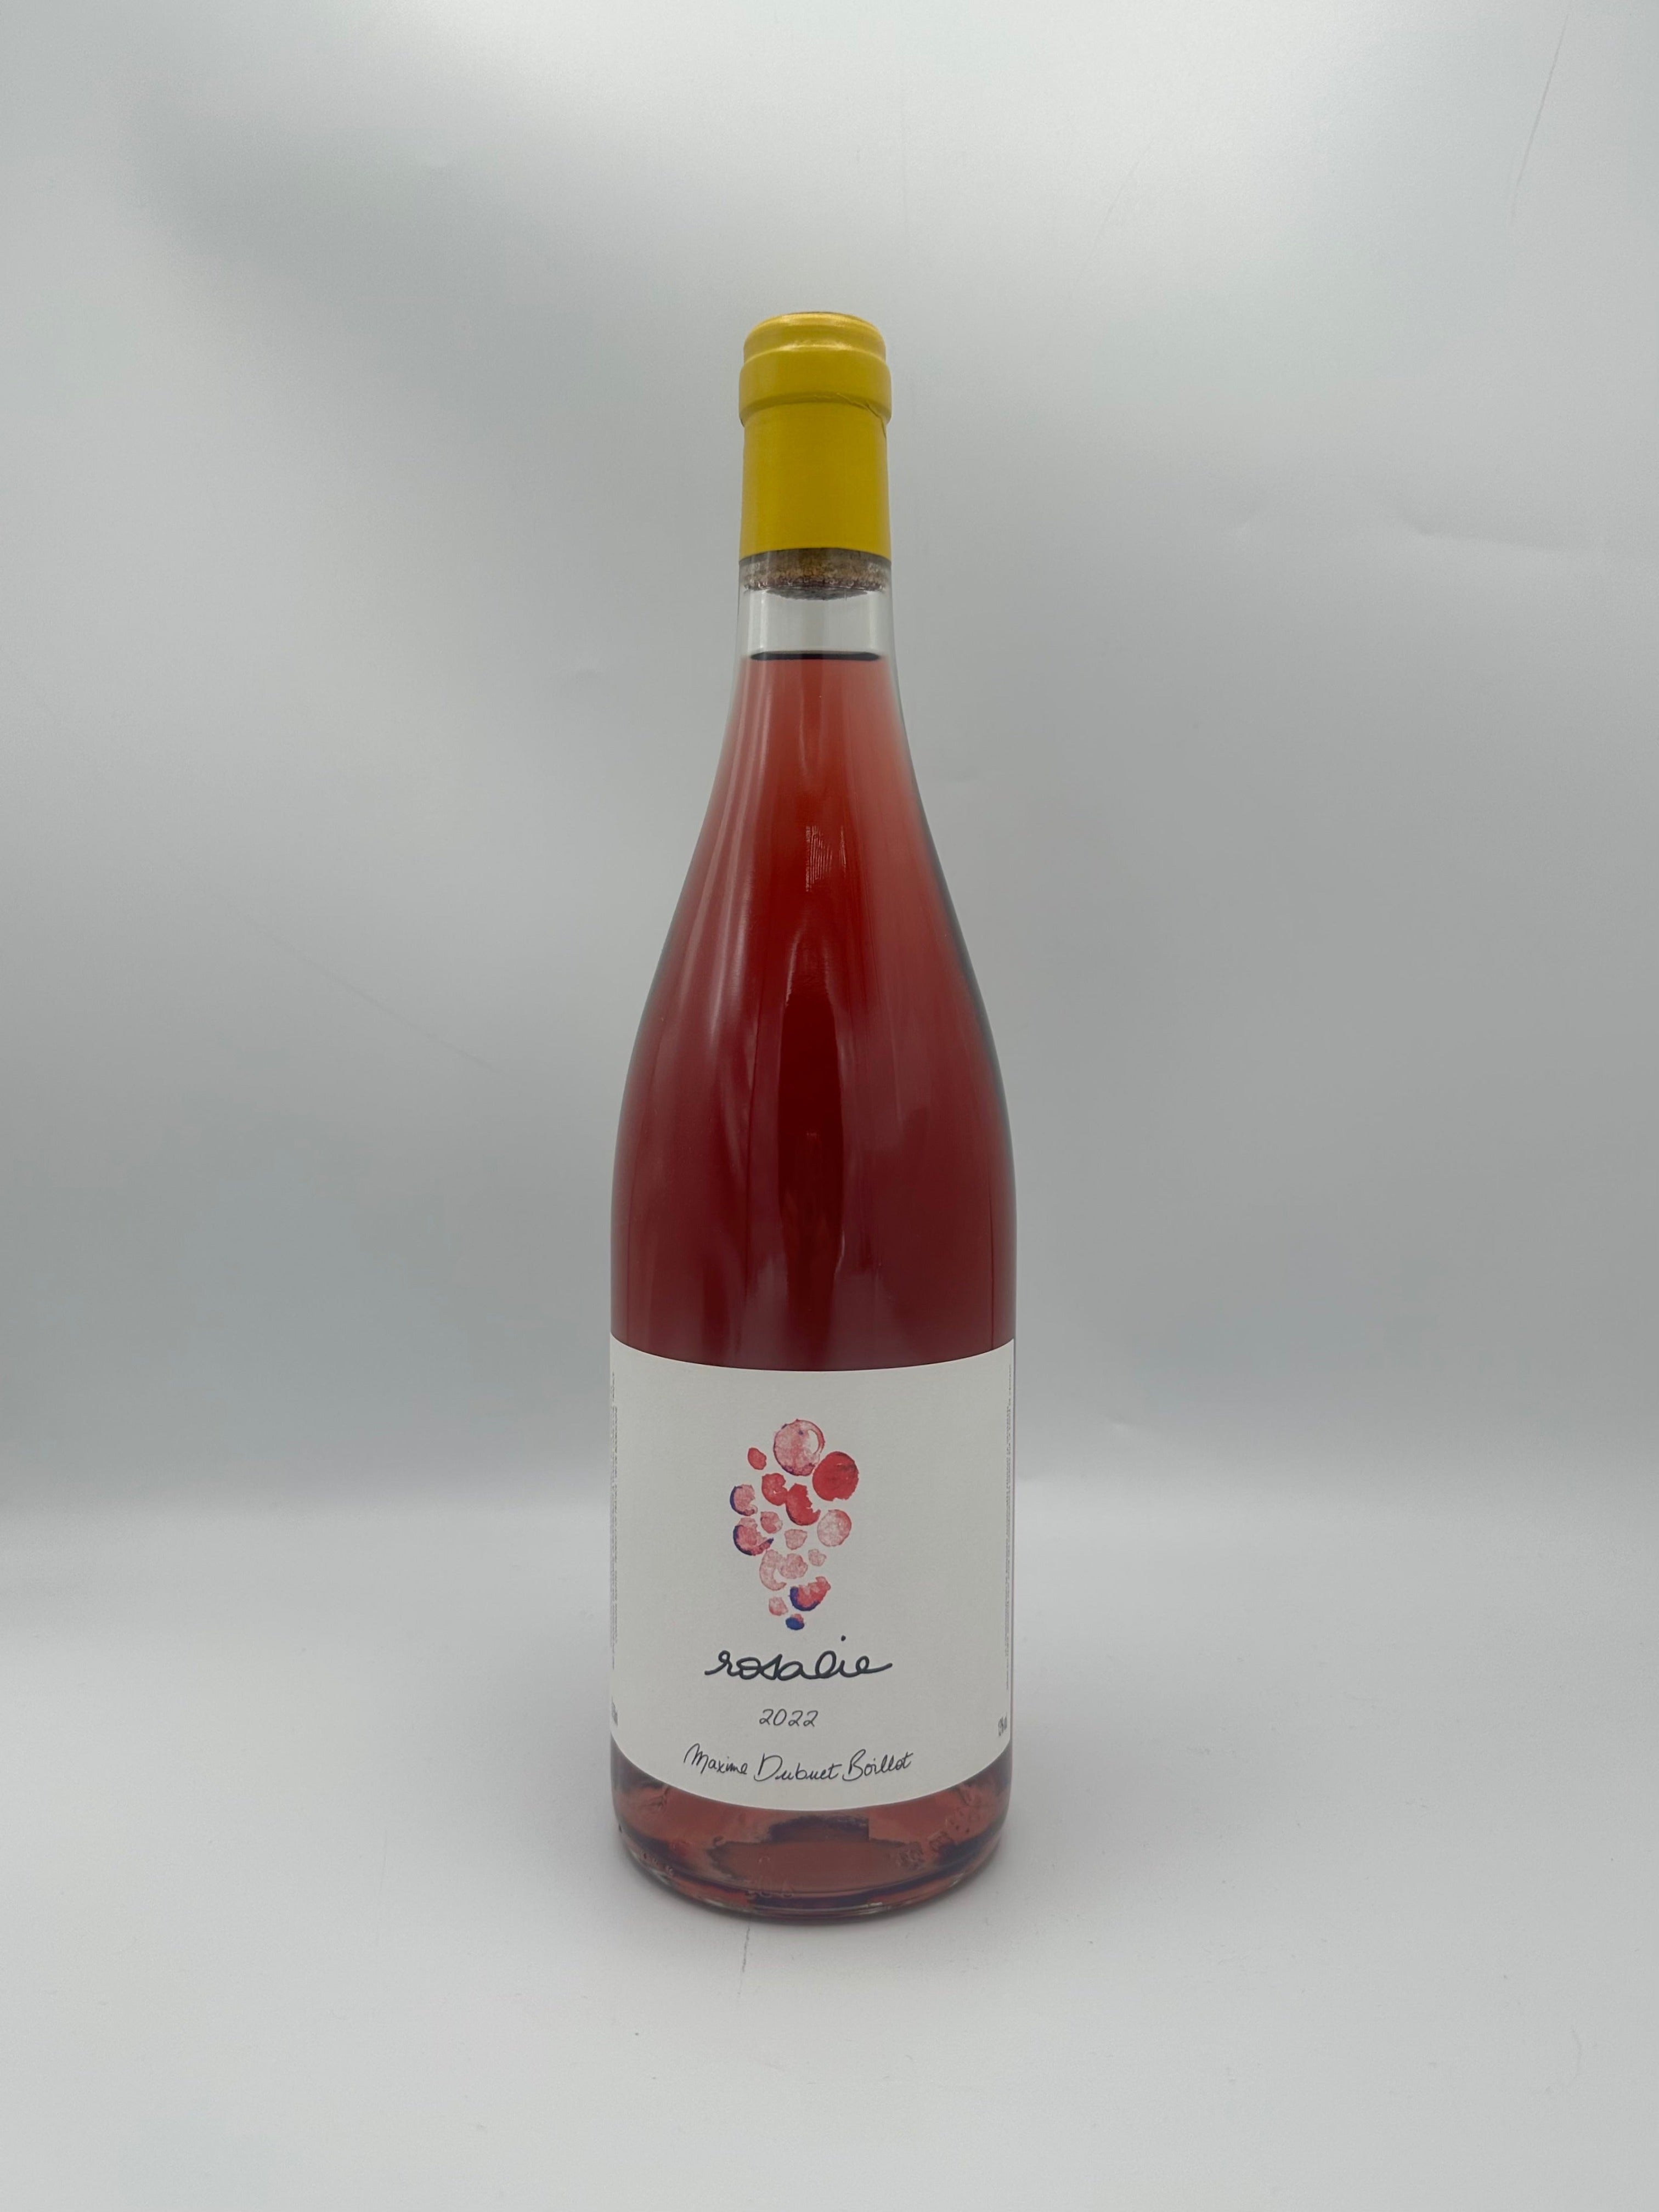 Bourgogne Rosé "Rosalie" 2022 Rosé - Maxime Dubuet Boillot